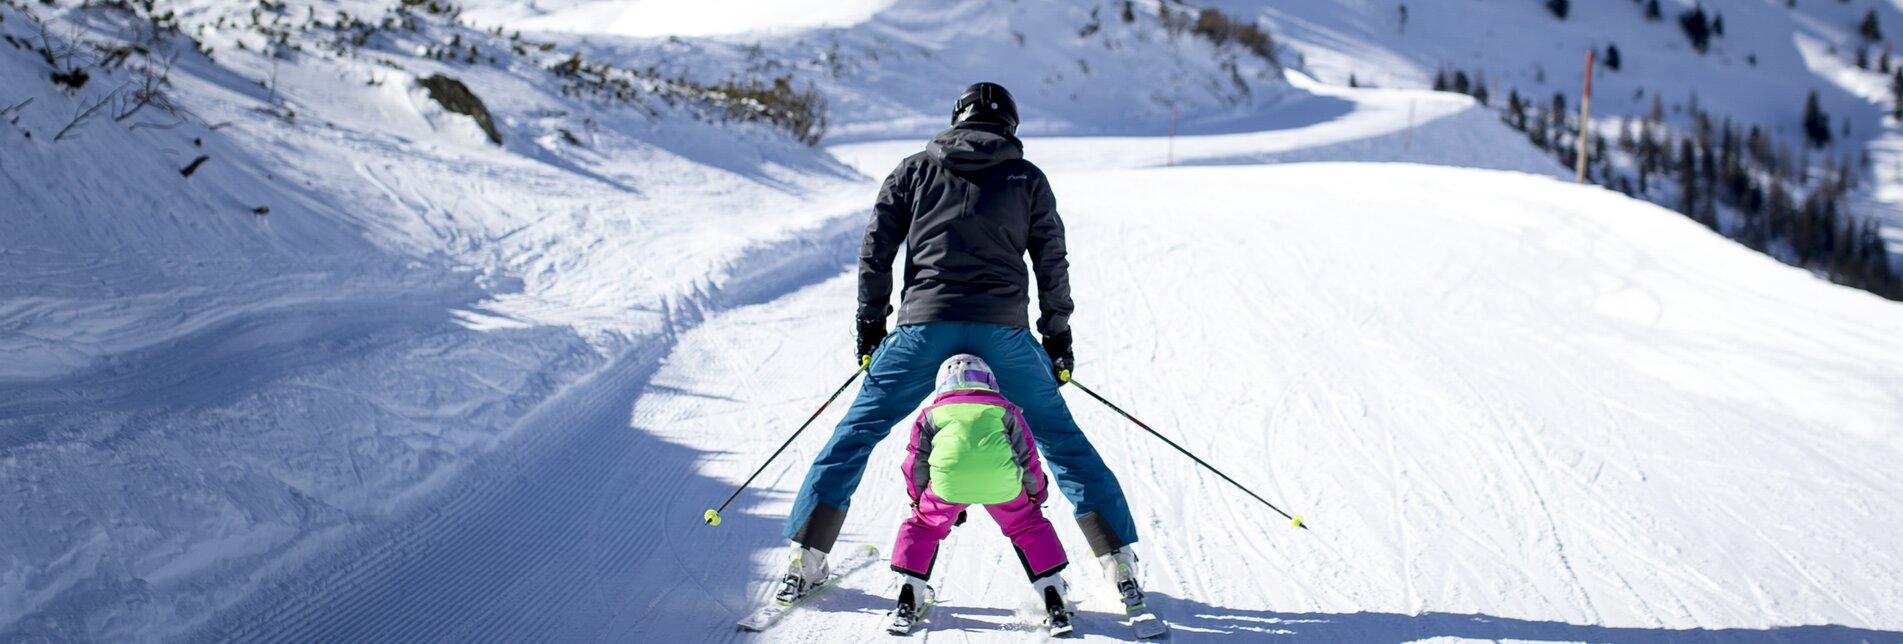 Skispaß mir der Familie - ob sich das ausgeht? :-) | © Steiermark Tourismus | Tom Lamm